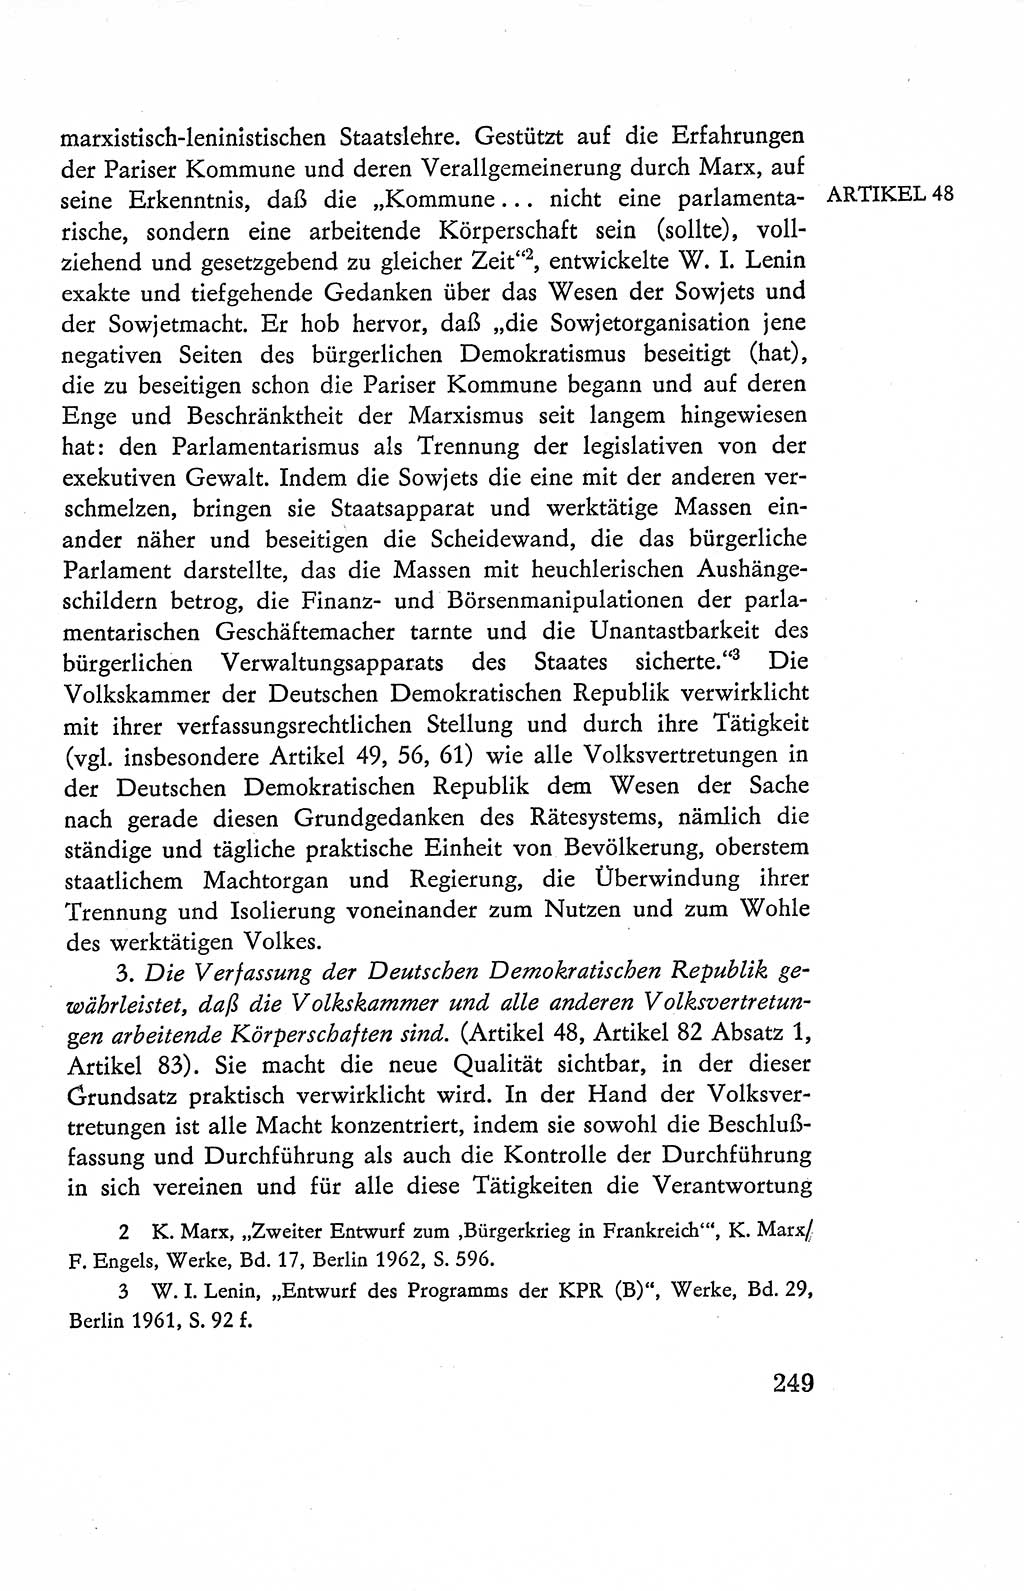 Verfassung der Deutschen Demokratischen Republik (DDR), Dokumente, Kommentar 1969, Band 2, Seite 249 (Verf. DDR Dok. Komm. 1969, Bd. 2, S. 249)